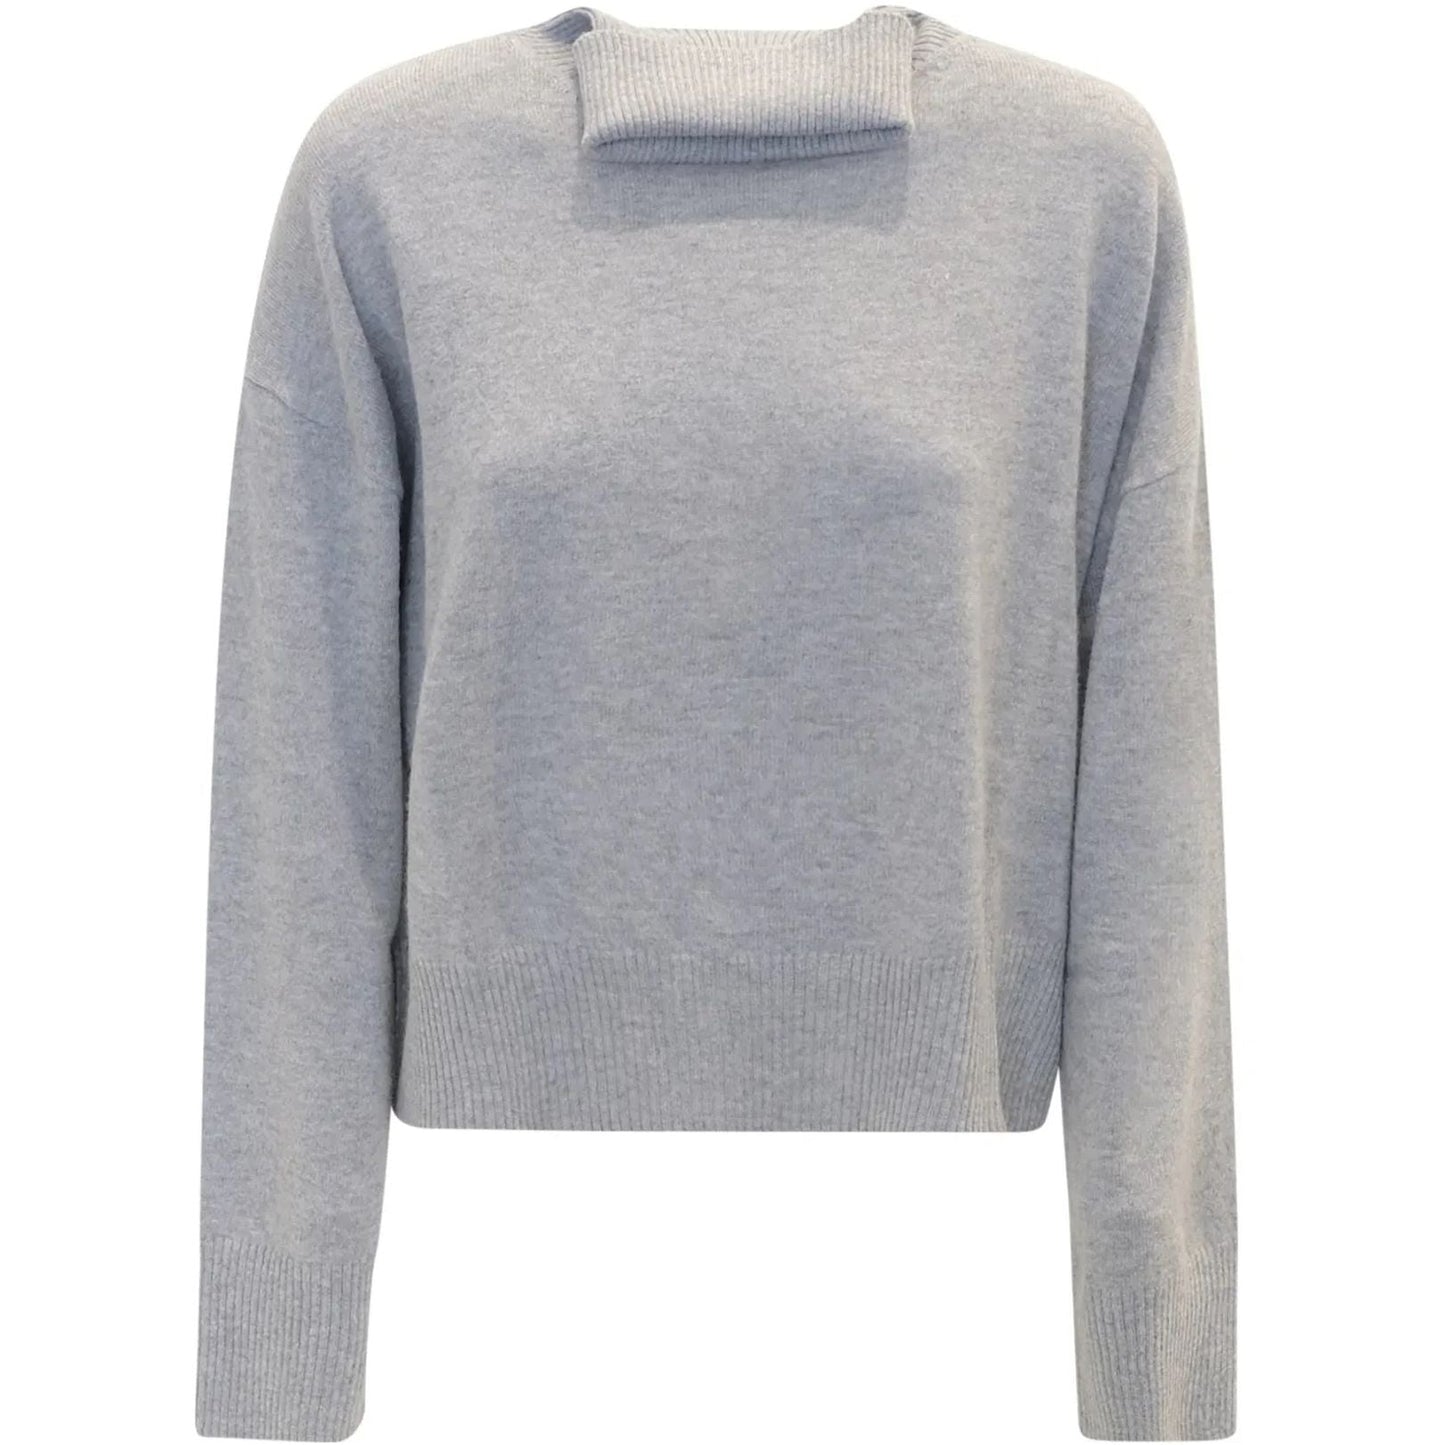 PAROSH moteriškas pilkas džemperis Wendy turtleneck sweater